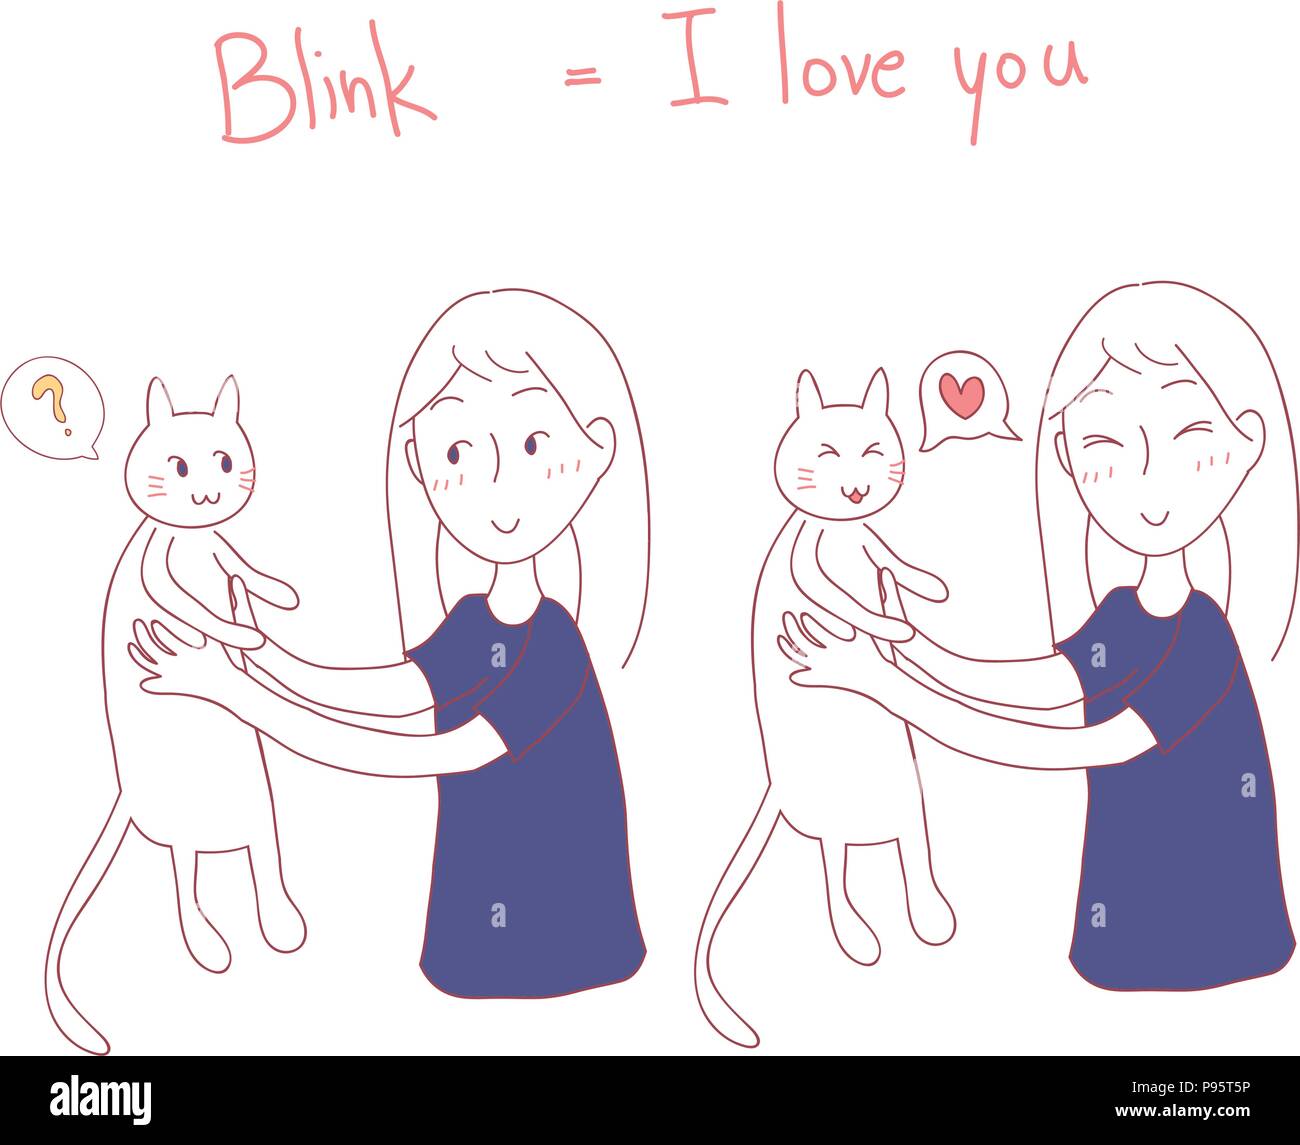 Mädchen Blinken, Cat. Ich liebe dich in Cat Sprache. Vector Illustration. auf weißem Hintergrund. Stock Vektor